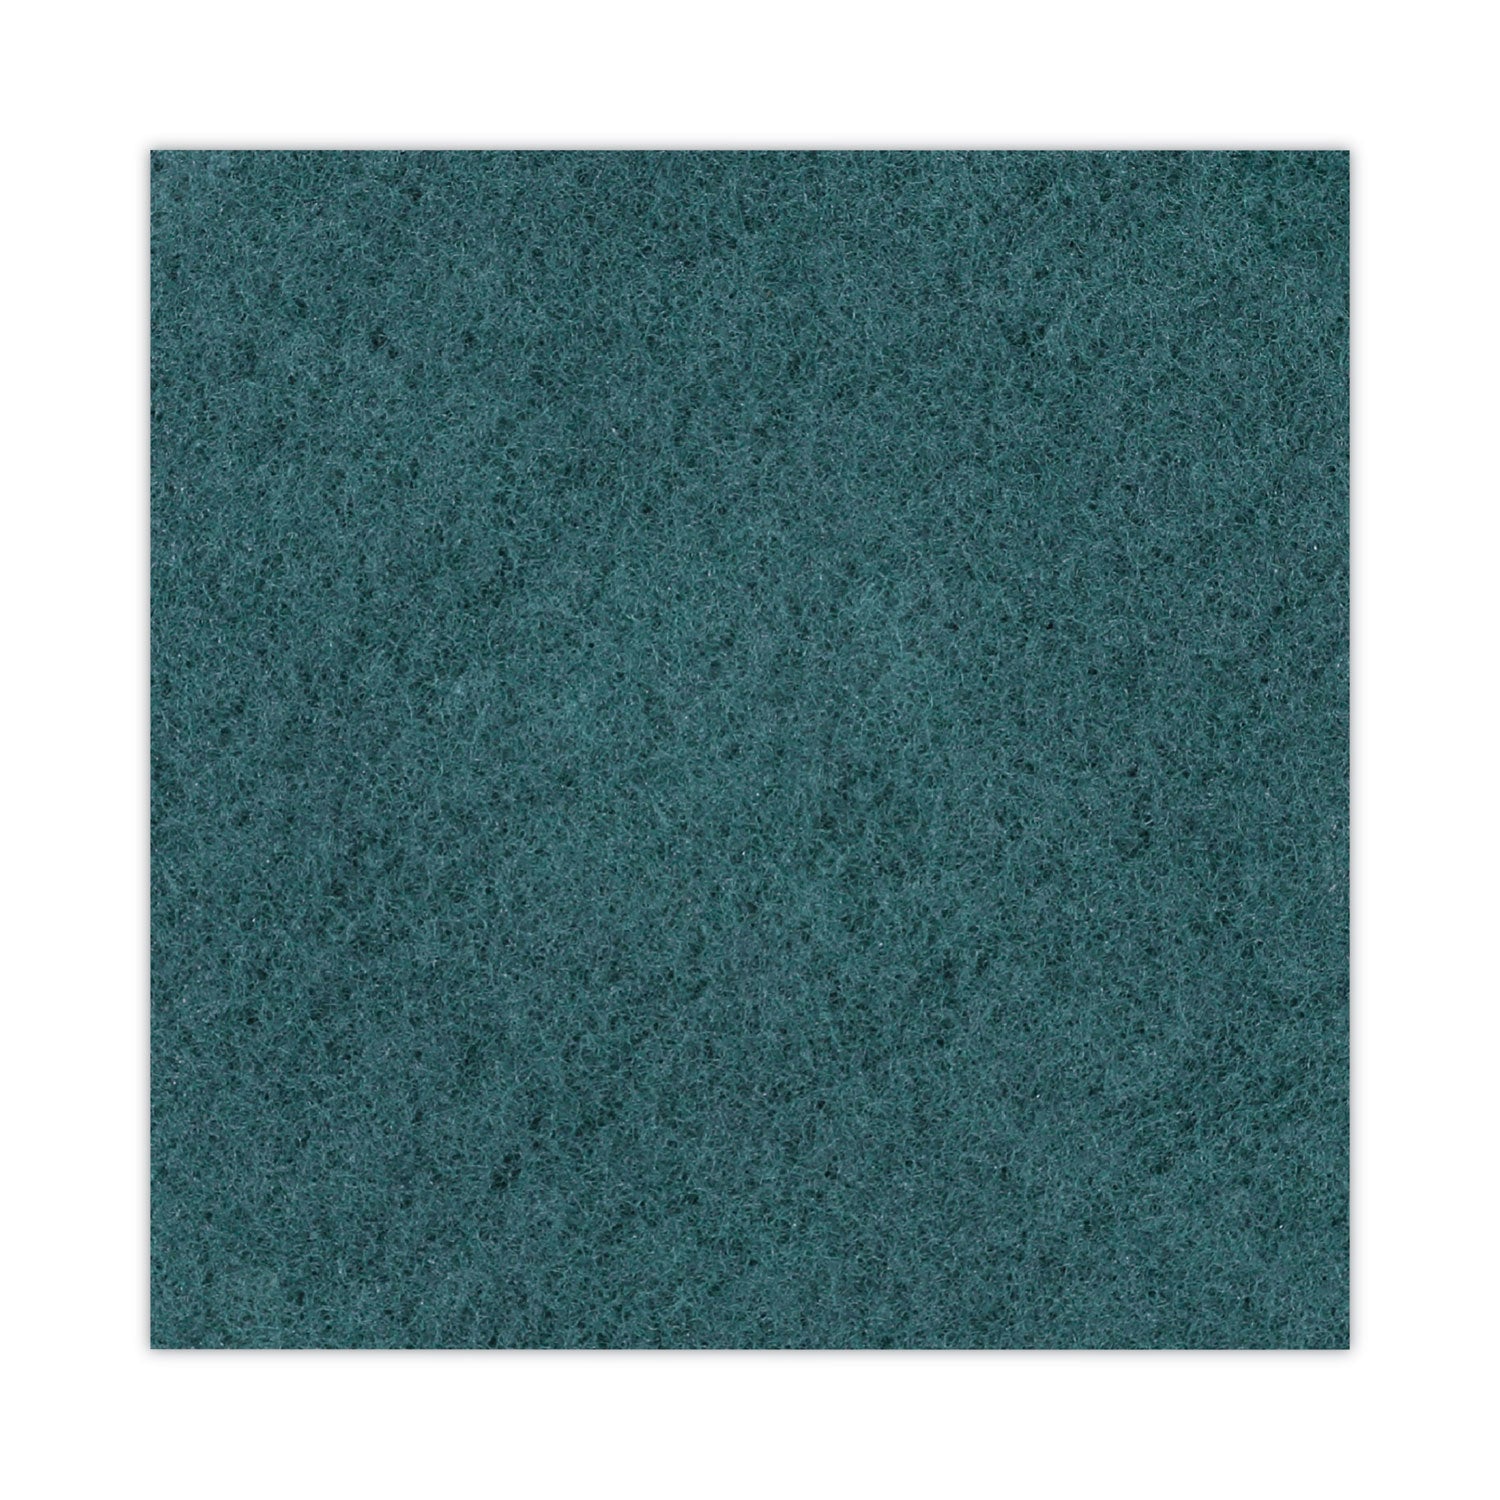 heavy-duty-scrubbing-floor-pads-18-diameter-green-5-carton_bwk4018gre - 6